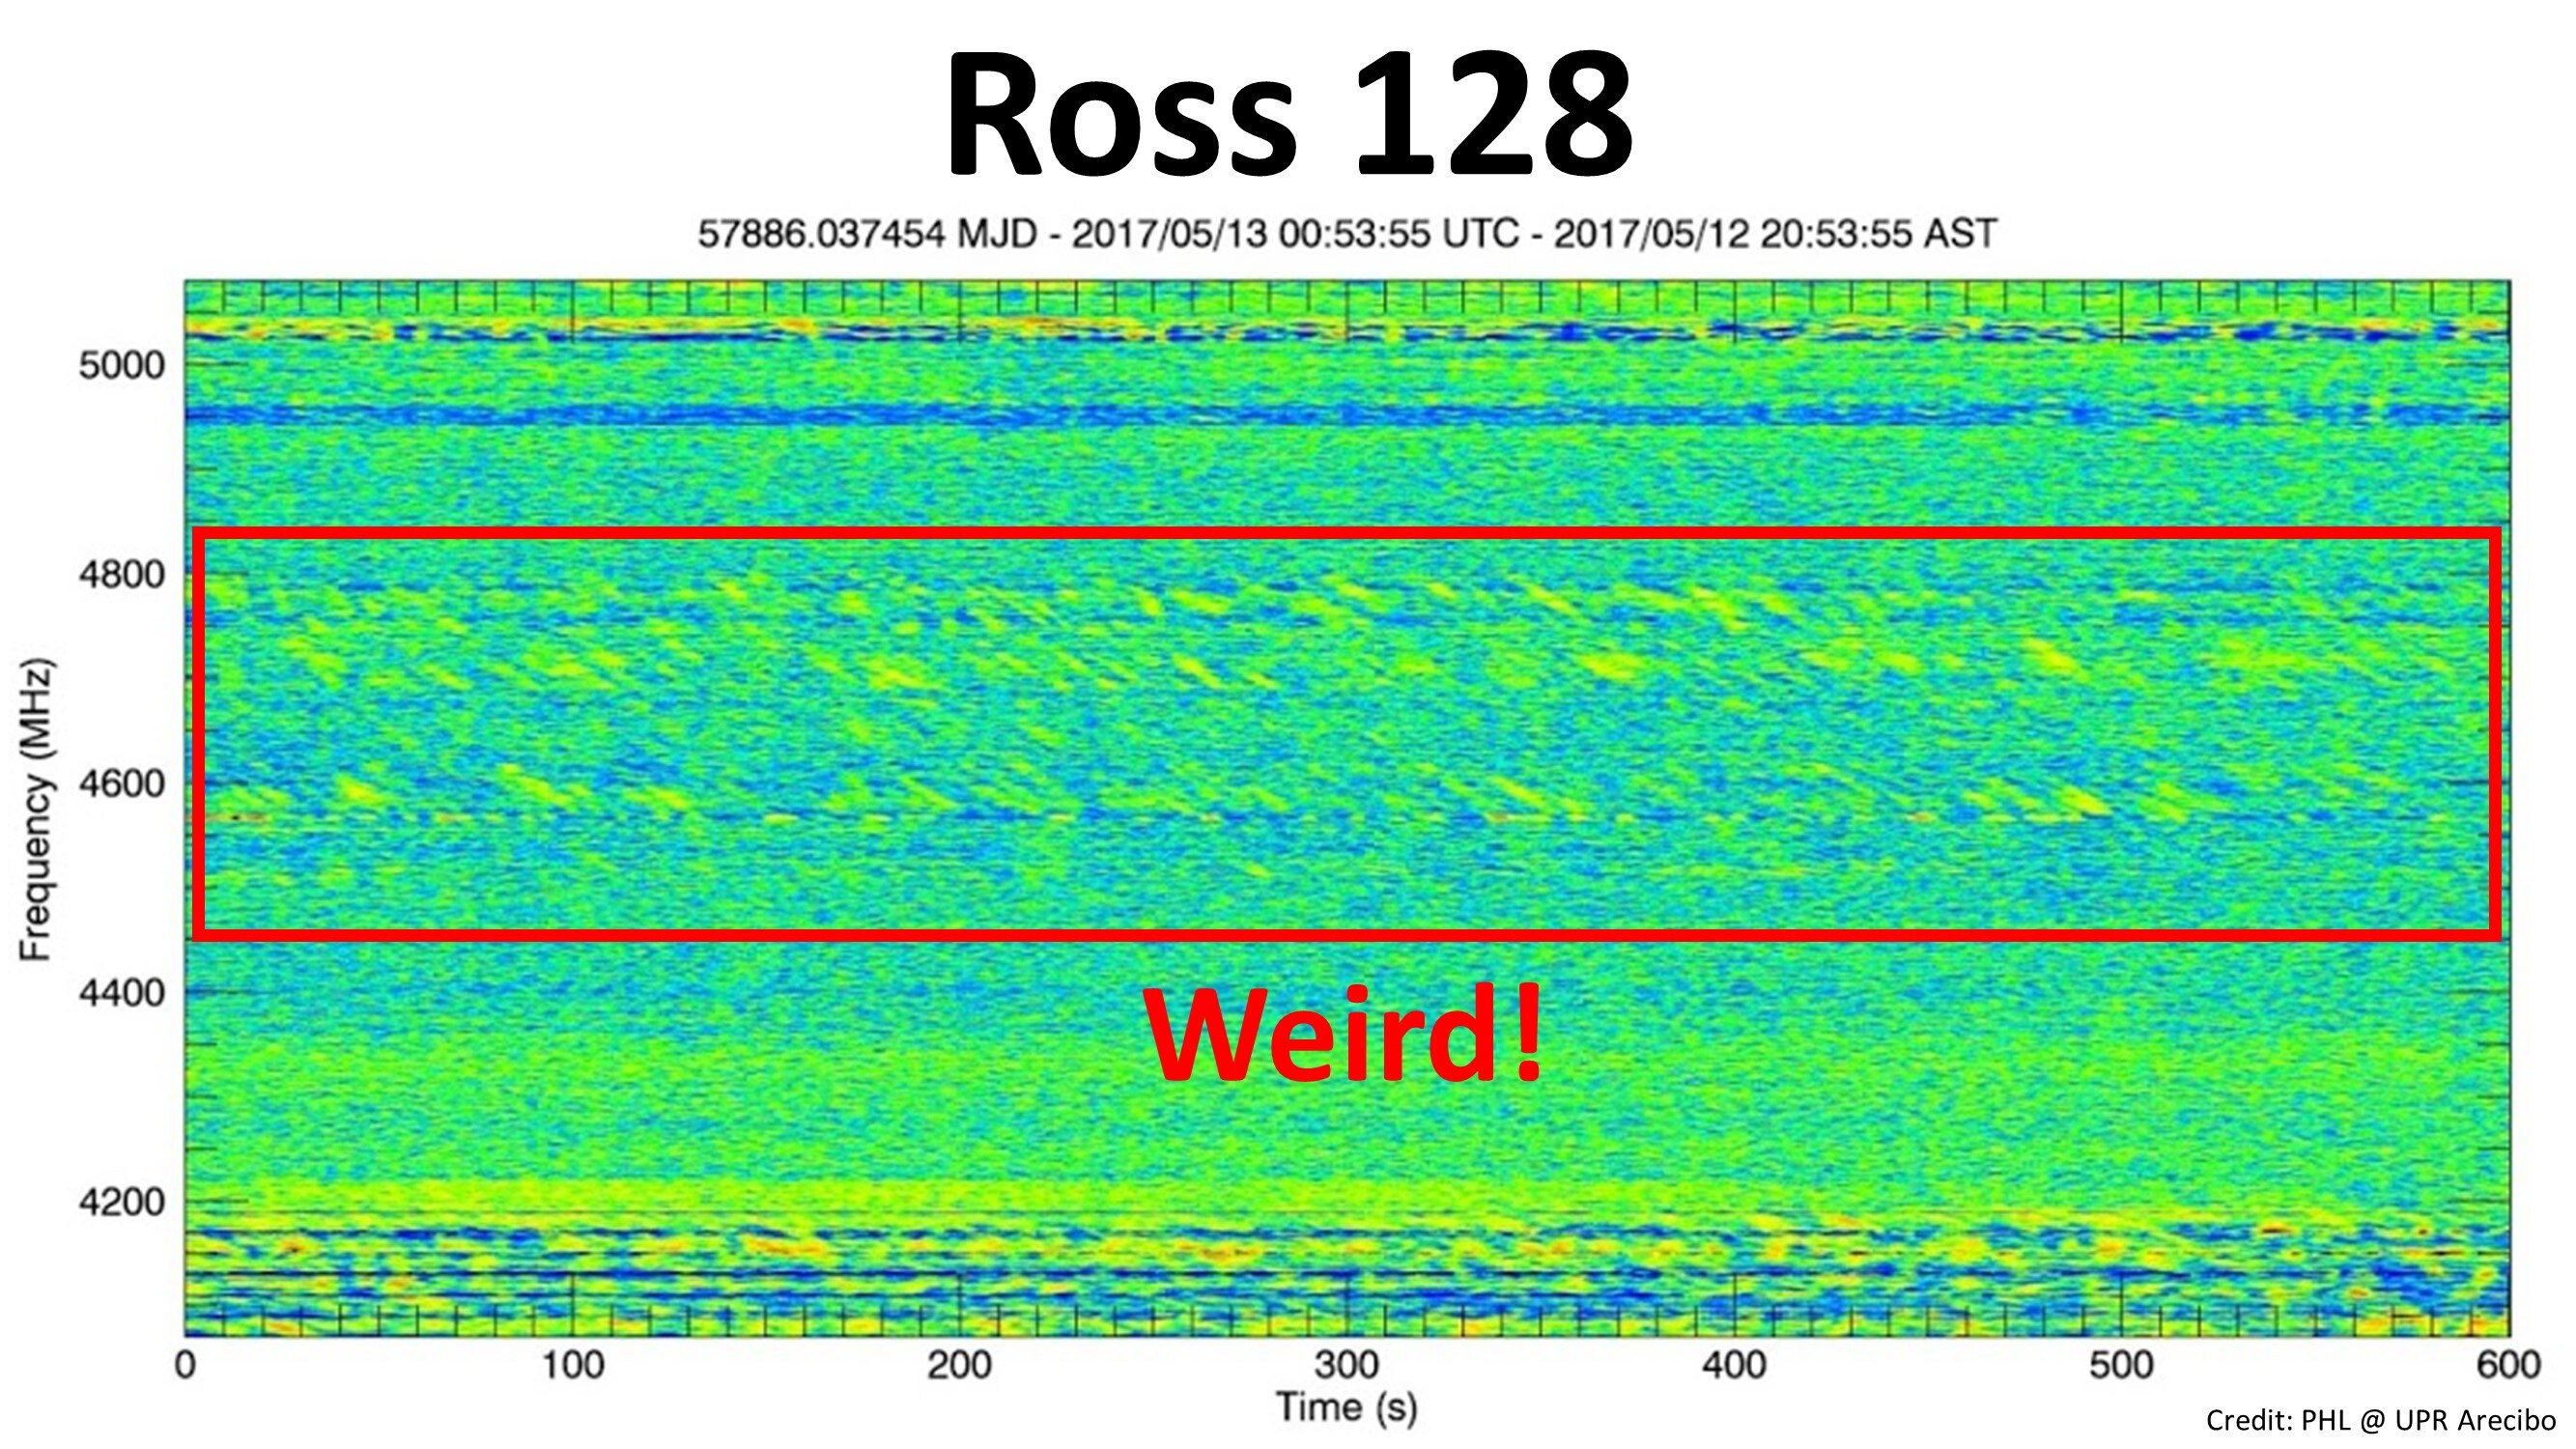 Confirmado el origen de la «extraña señal de radio» de la estrella Ross 128